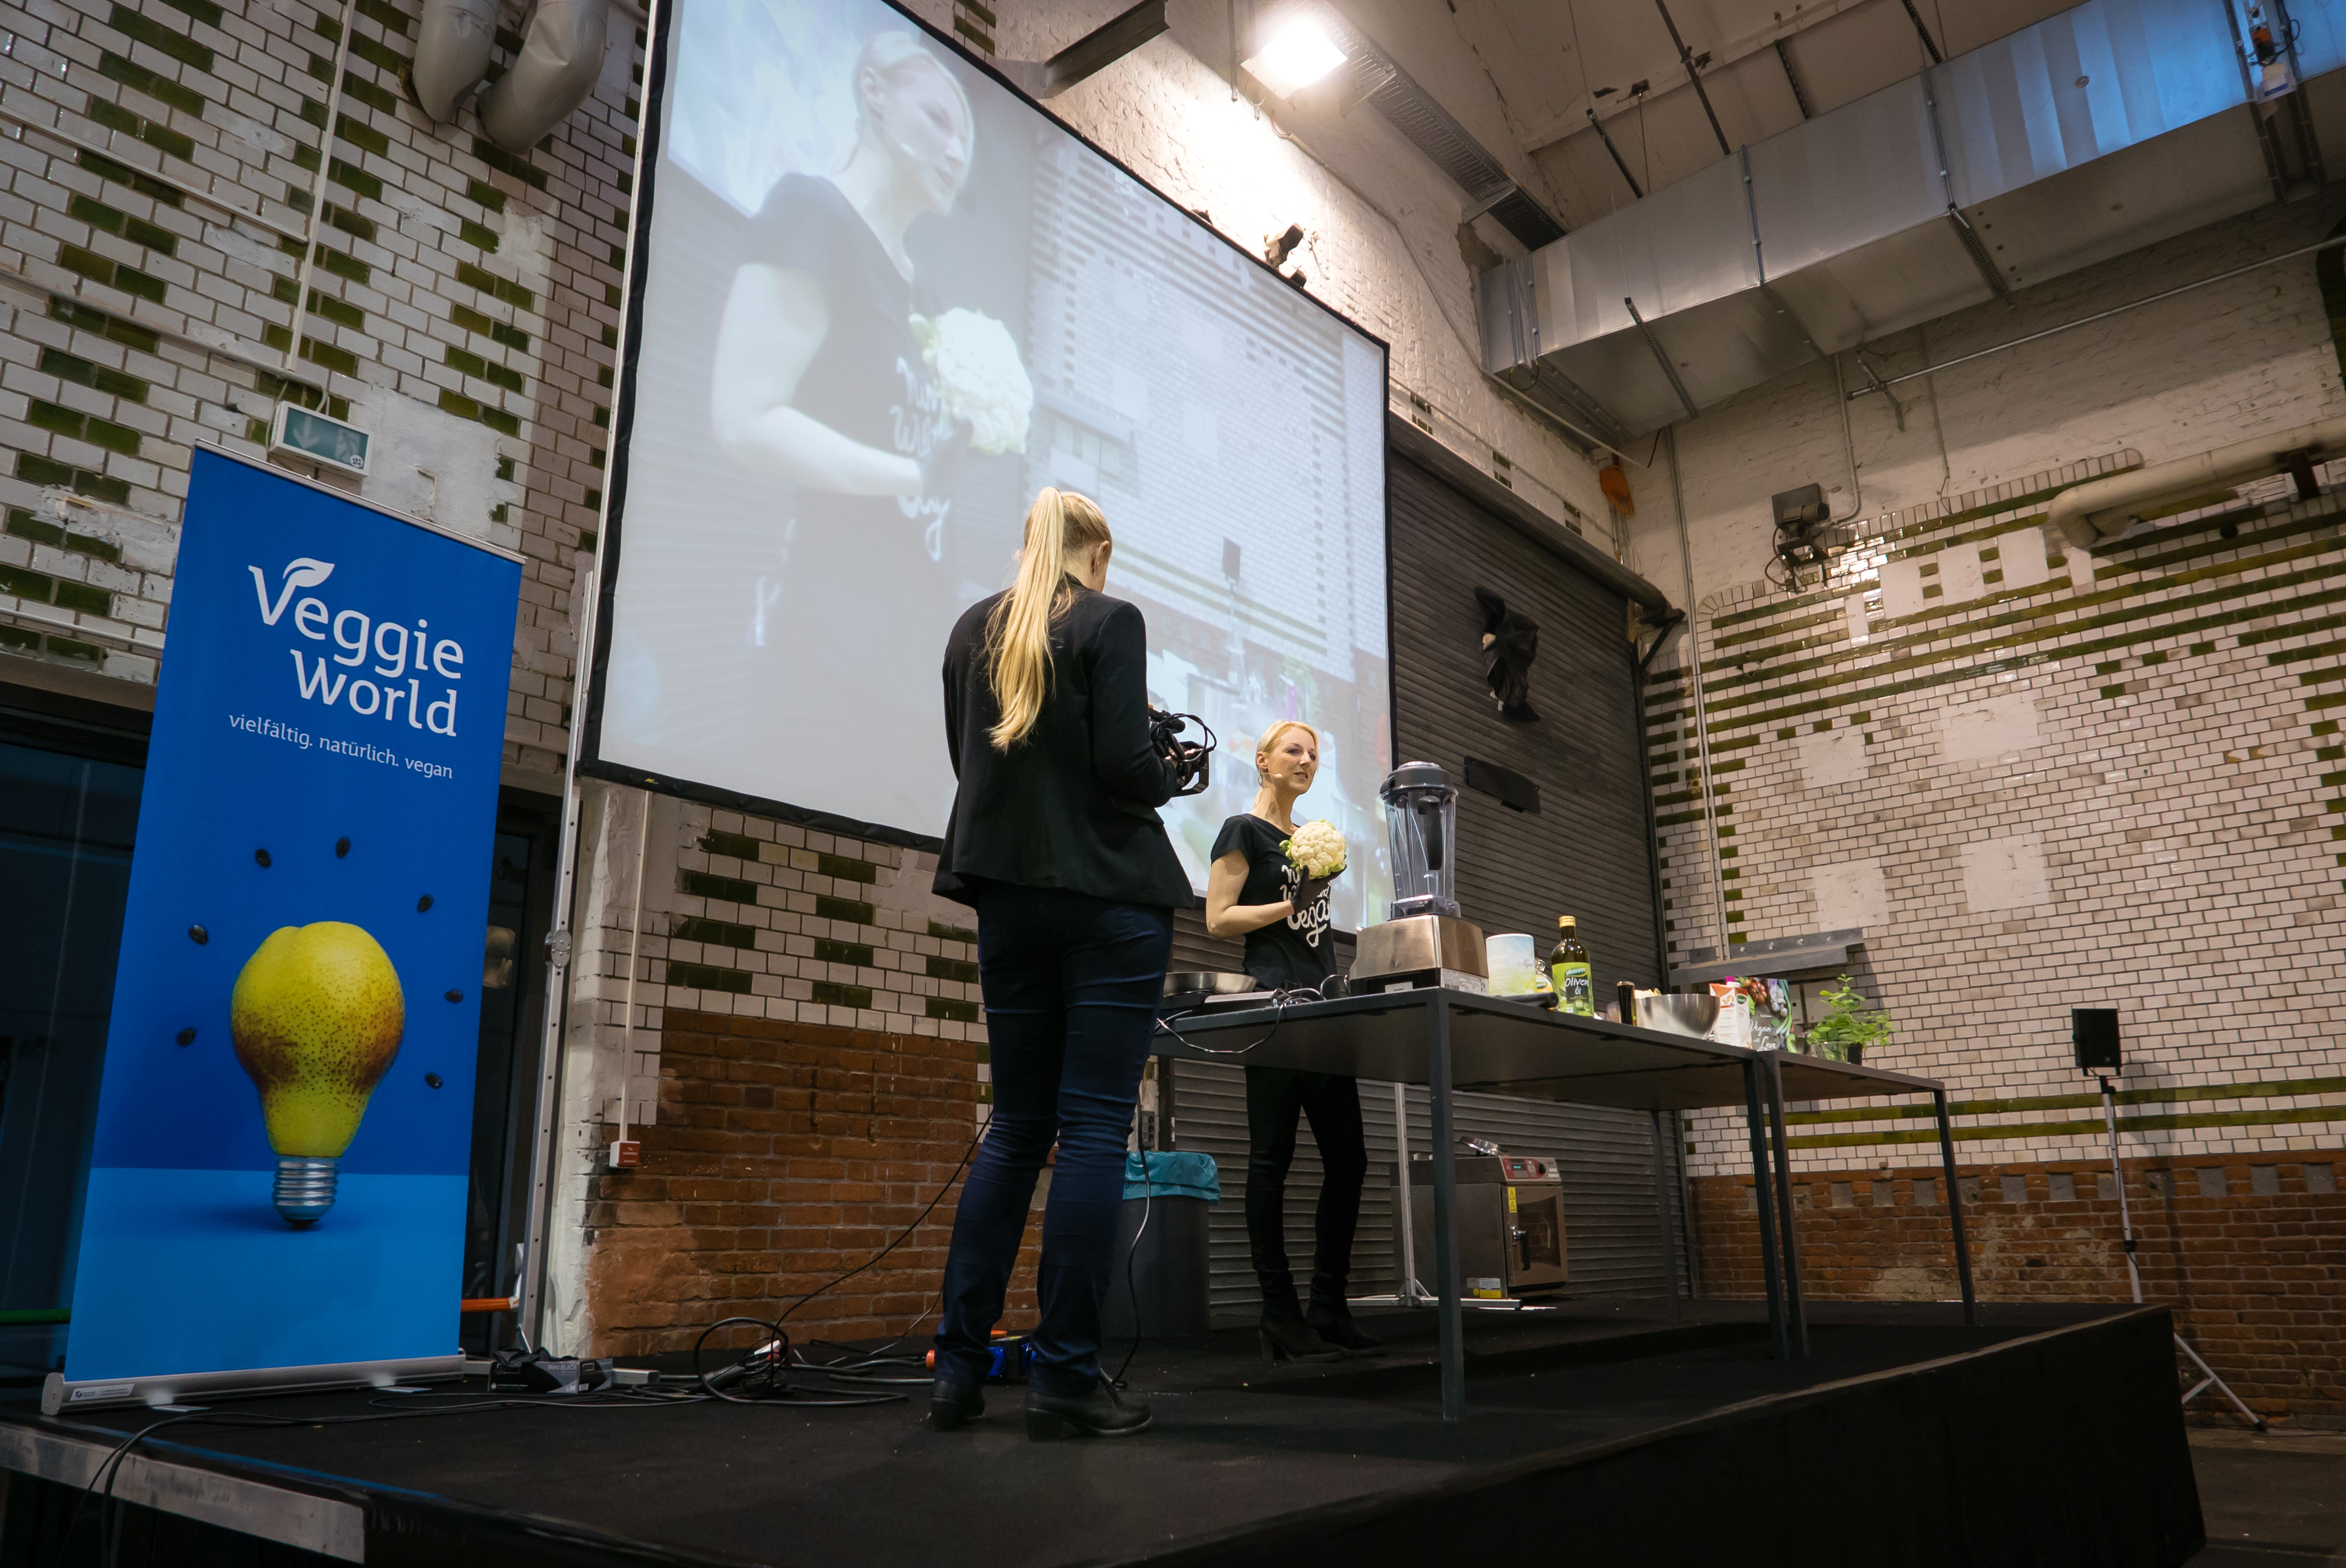 Vegane Kochshow zum Thema "Clean eating" auf der VeggieWorld Berlin 2015